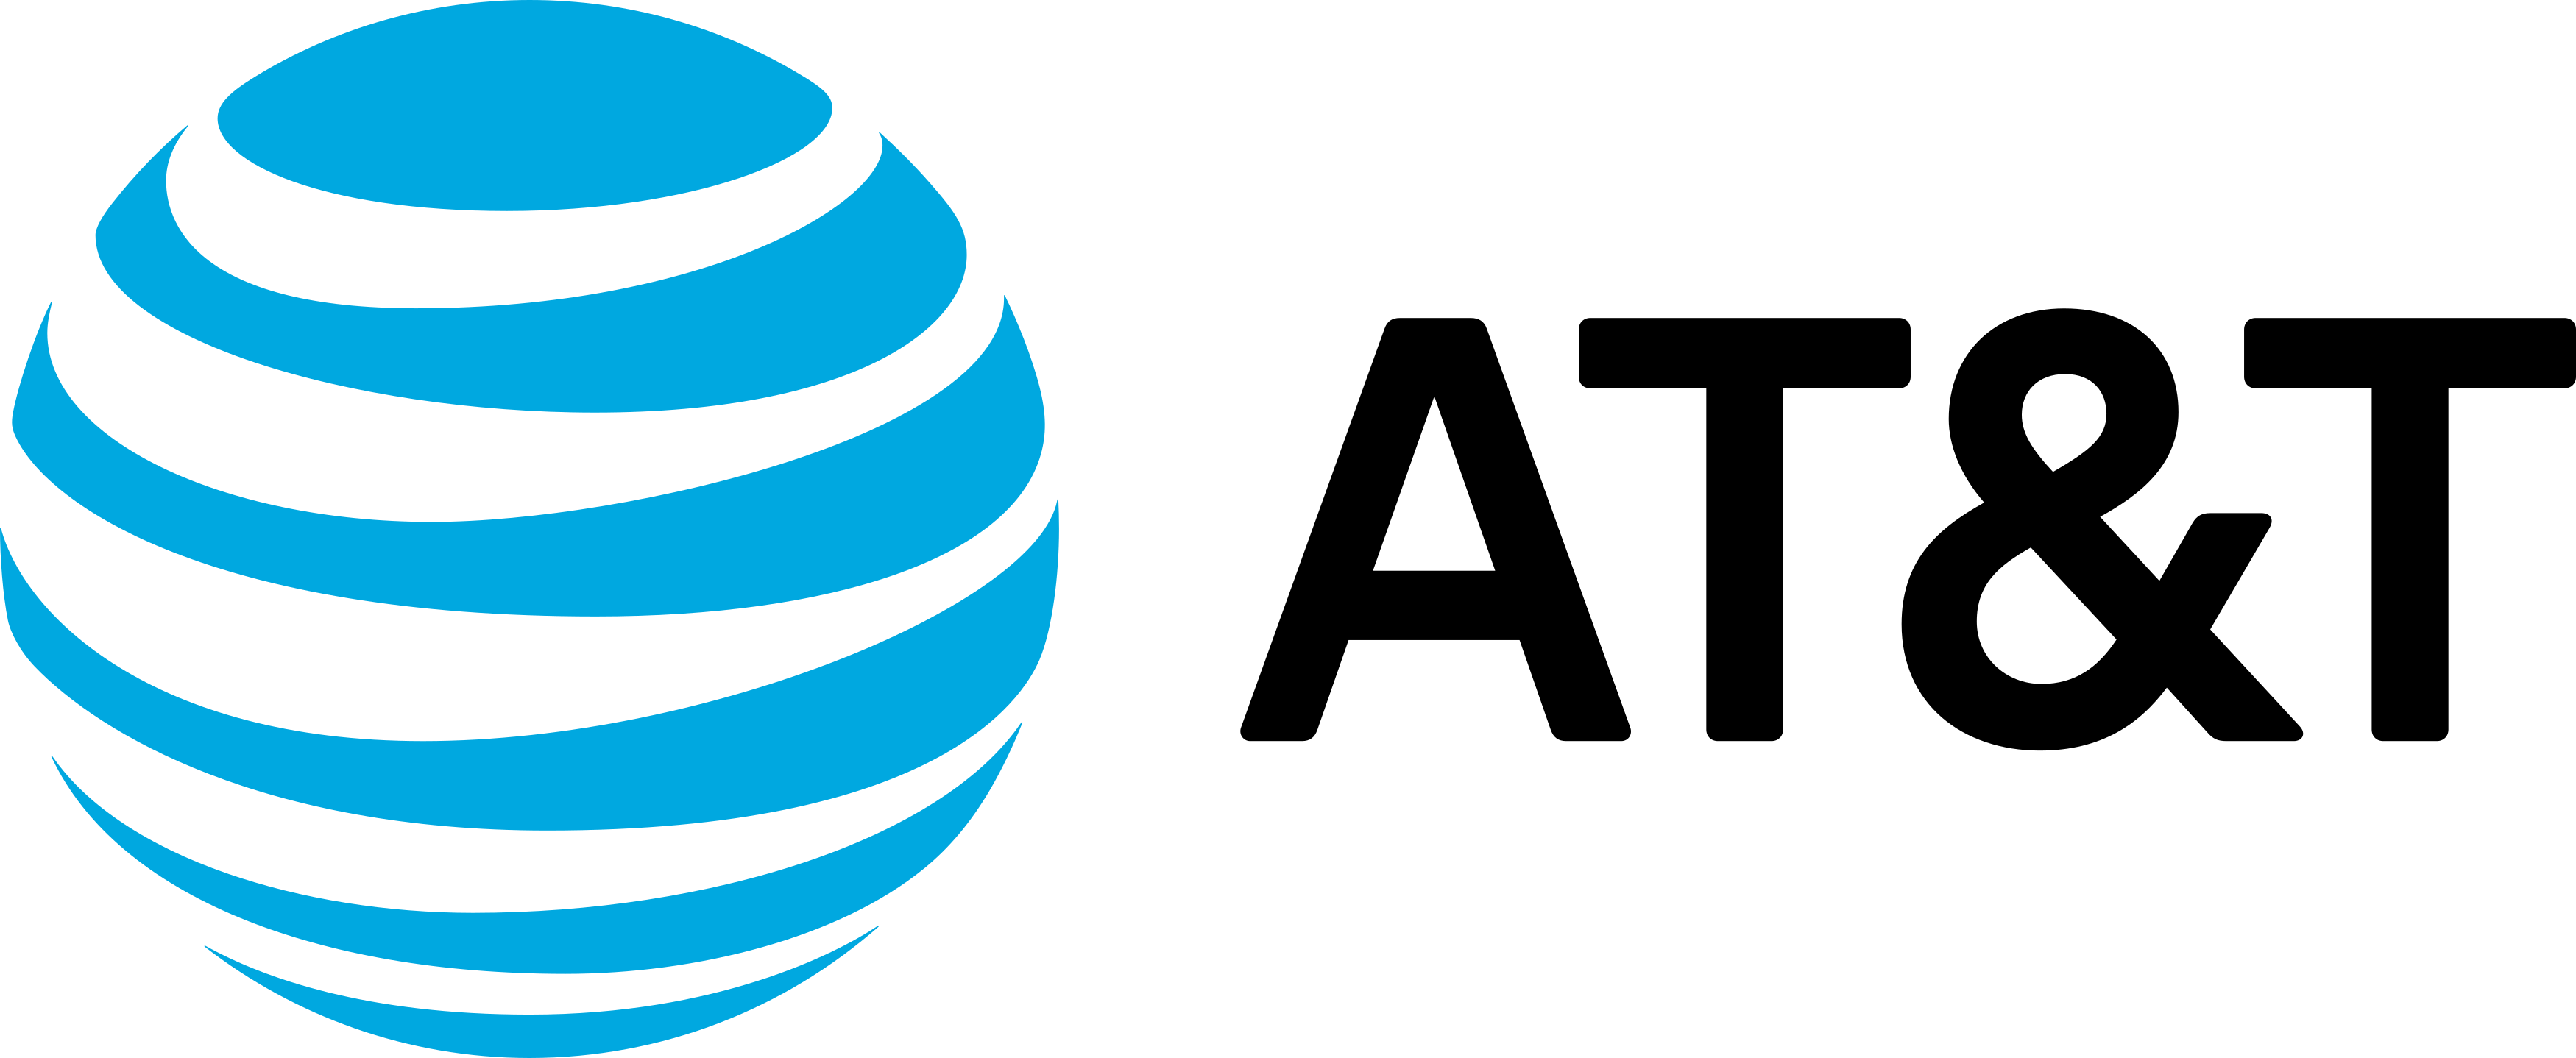 att logo - AT&T Logo